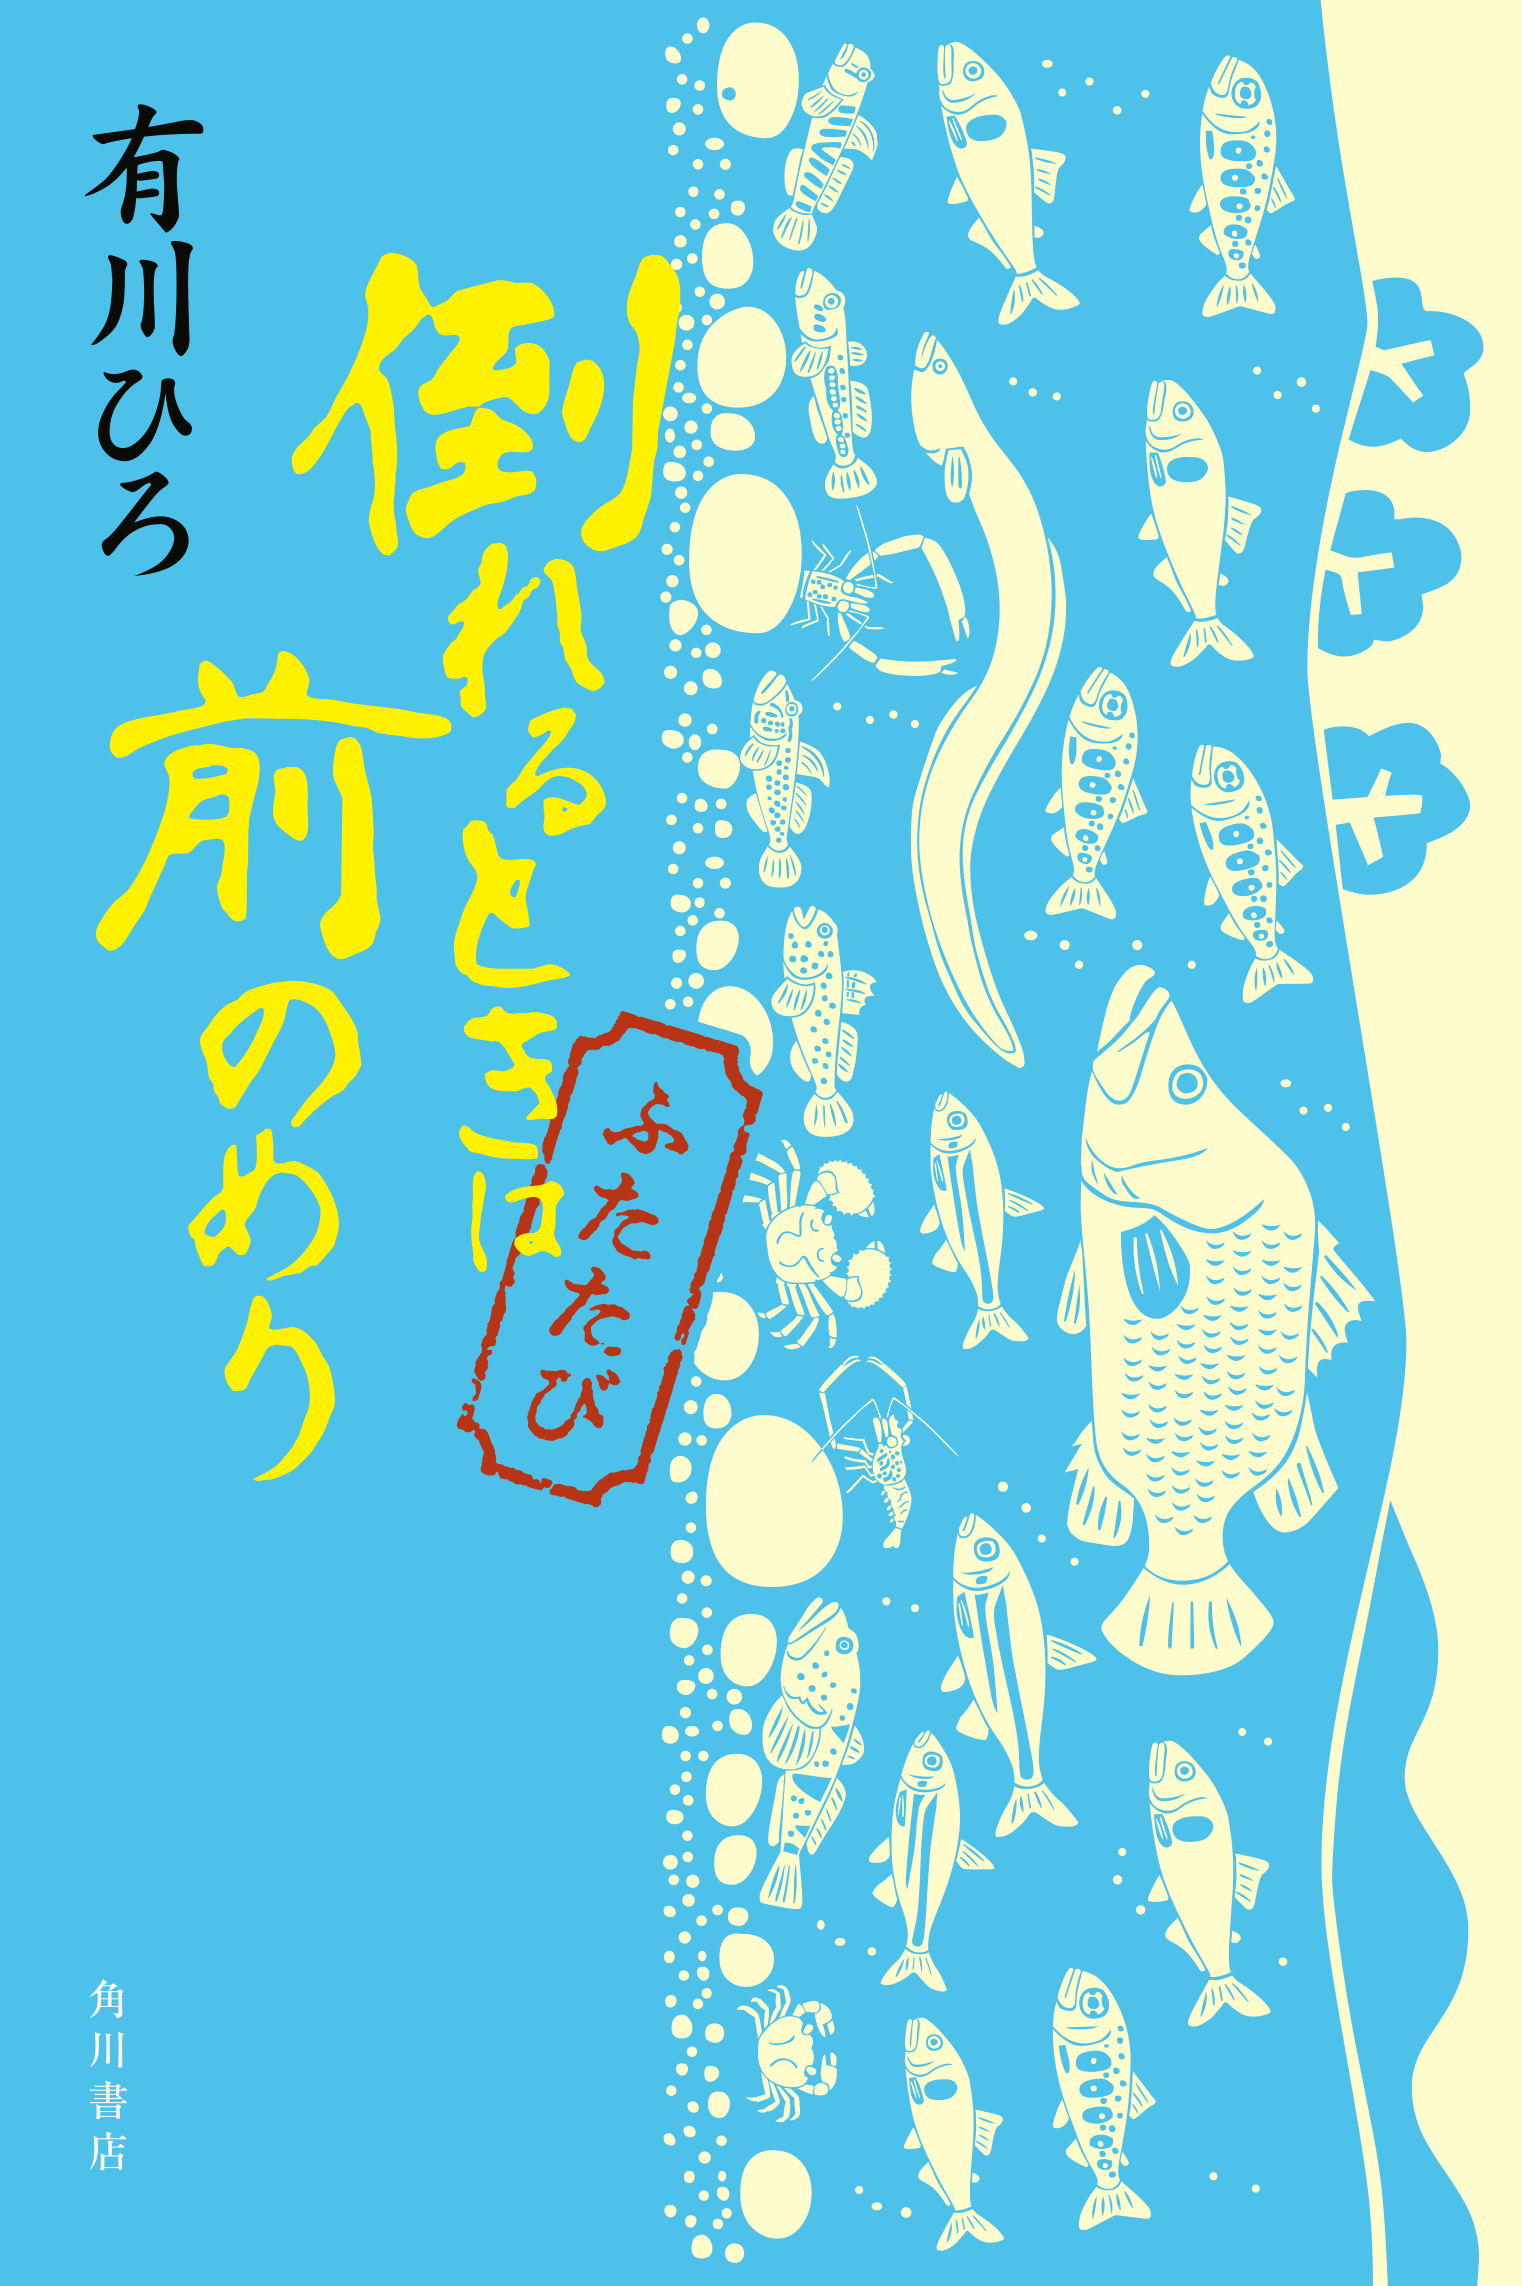 有川ひろ氏の魅力がつまったエッセイ集第２弾 倒れるときは前のめり ふたたび 10月31日発売 書き下ろし小説2 編も収録 株式会社kadokawaのプレスリリース